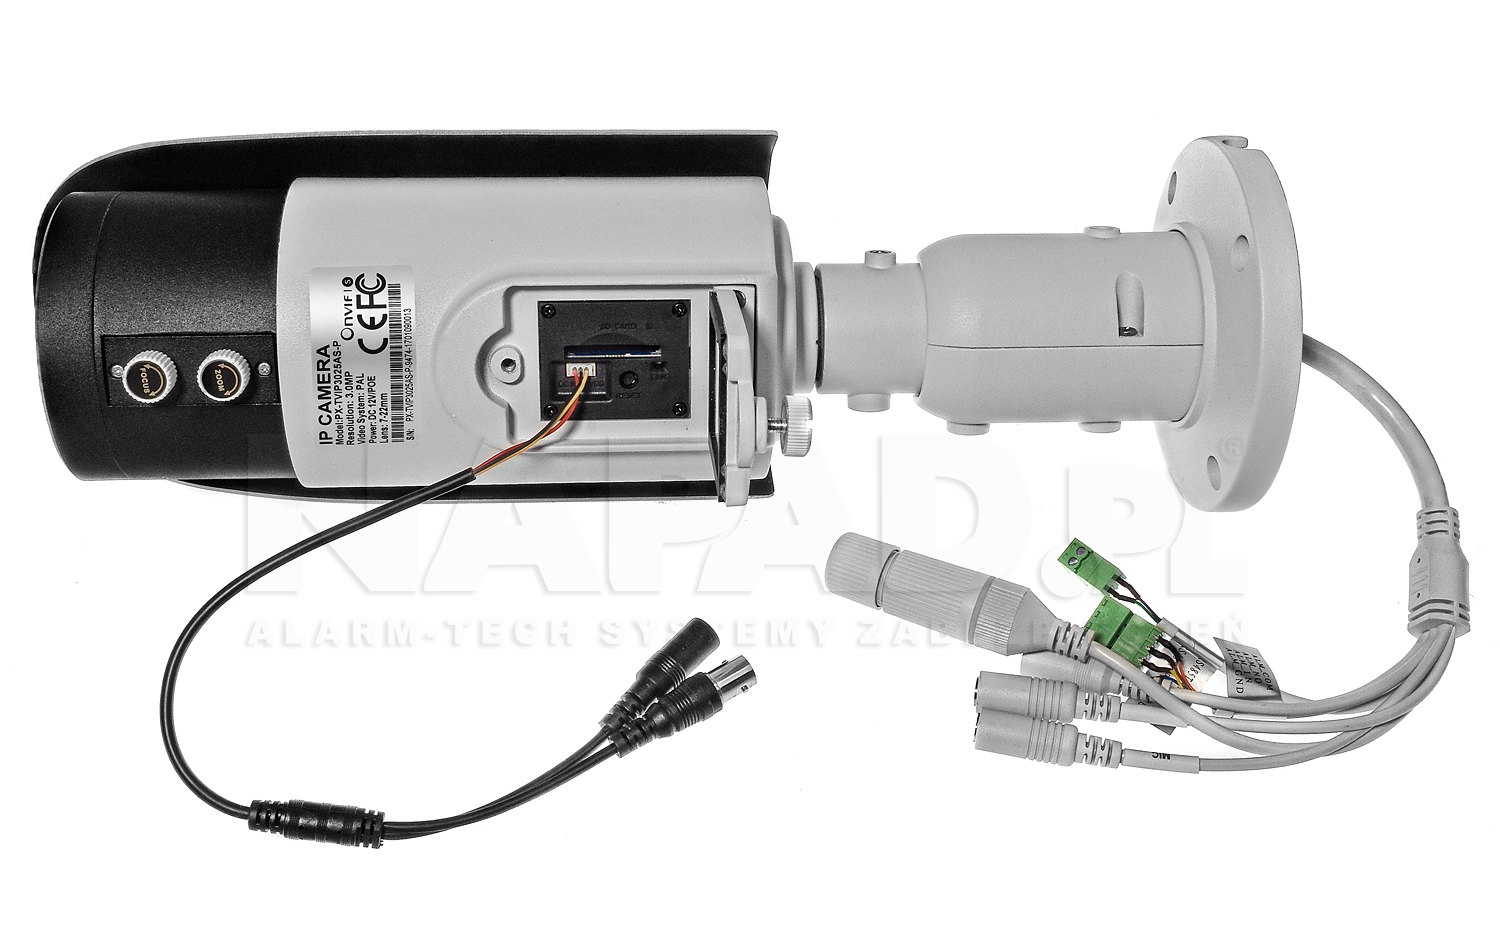 PX-TVIP3025AS-P - Gniazdo do podłączenia monitora serwisowego w kamerze megapikselowej.